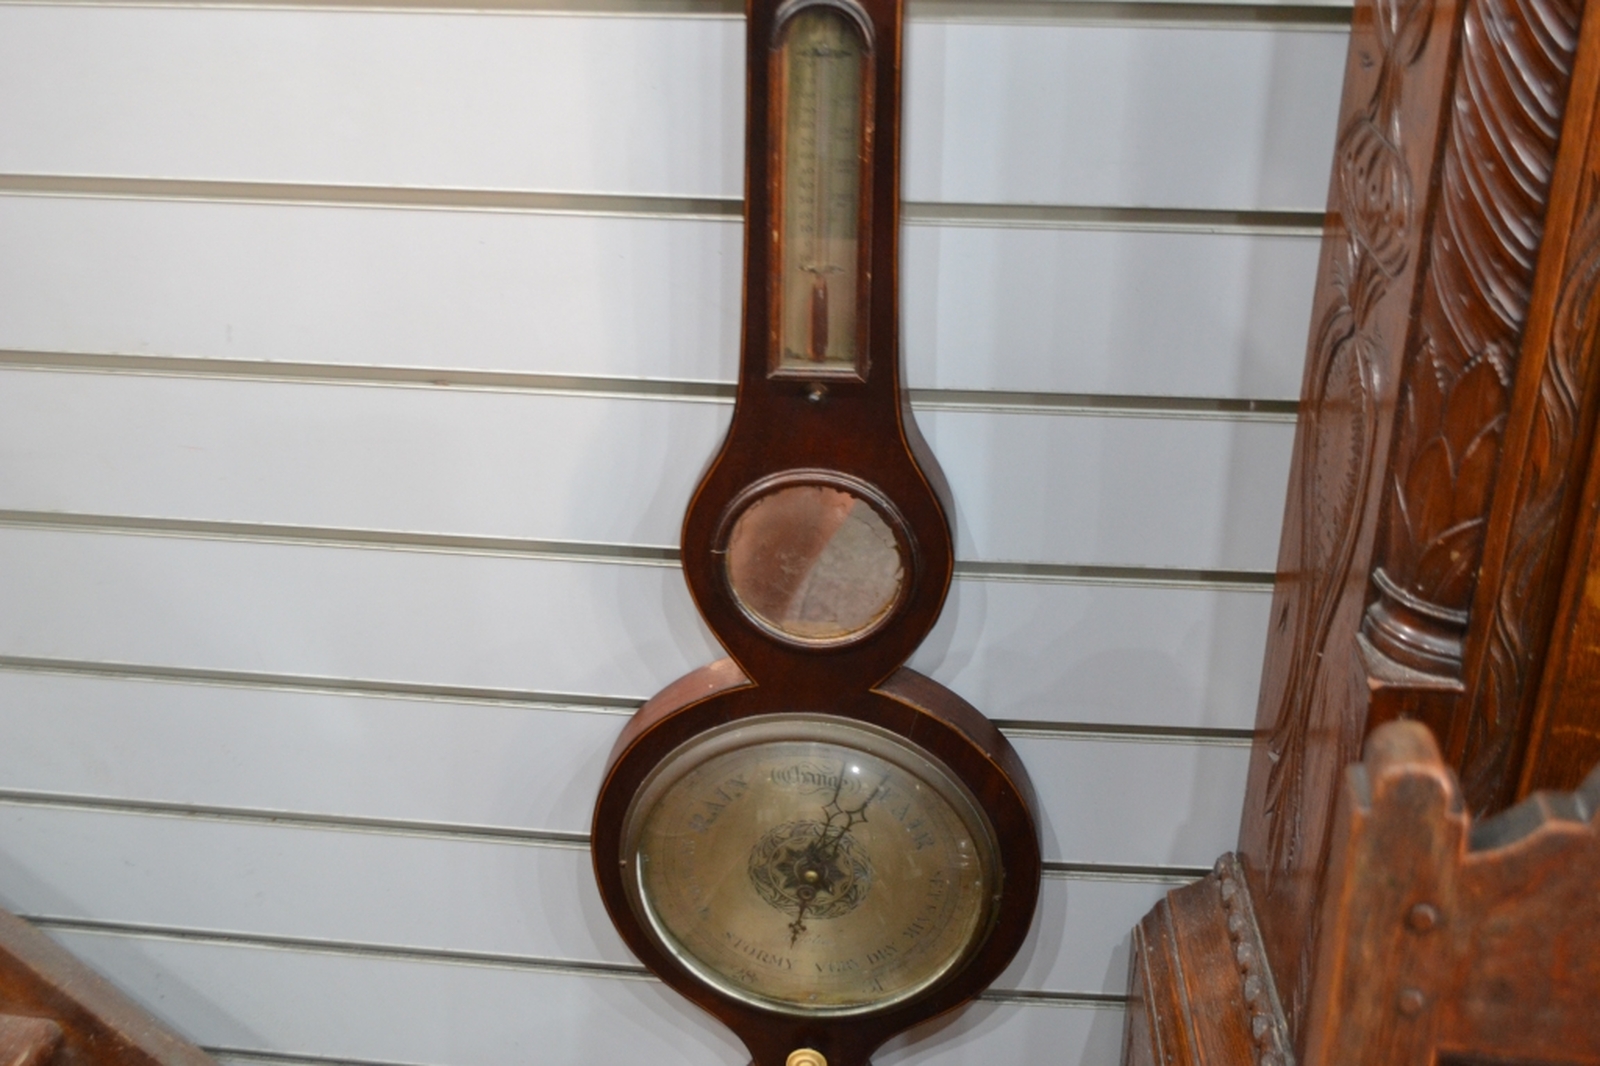 19th century mercury barometer